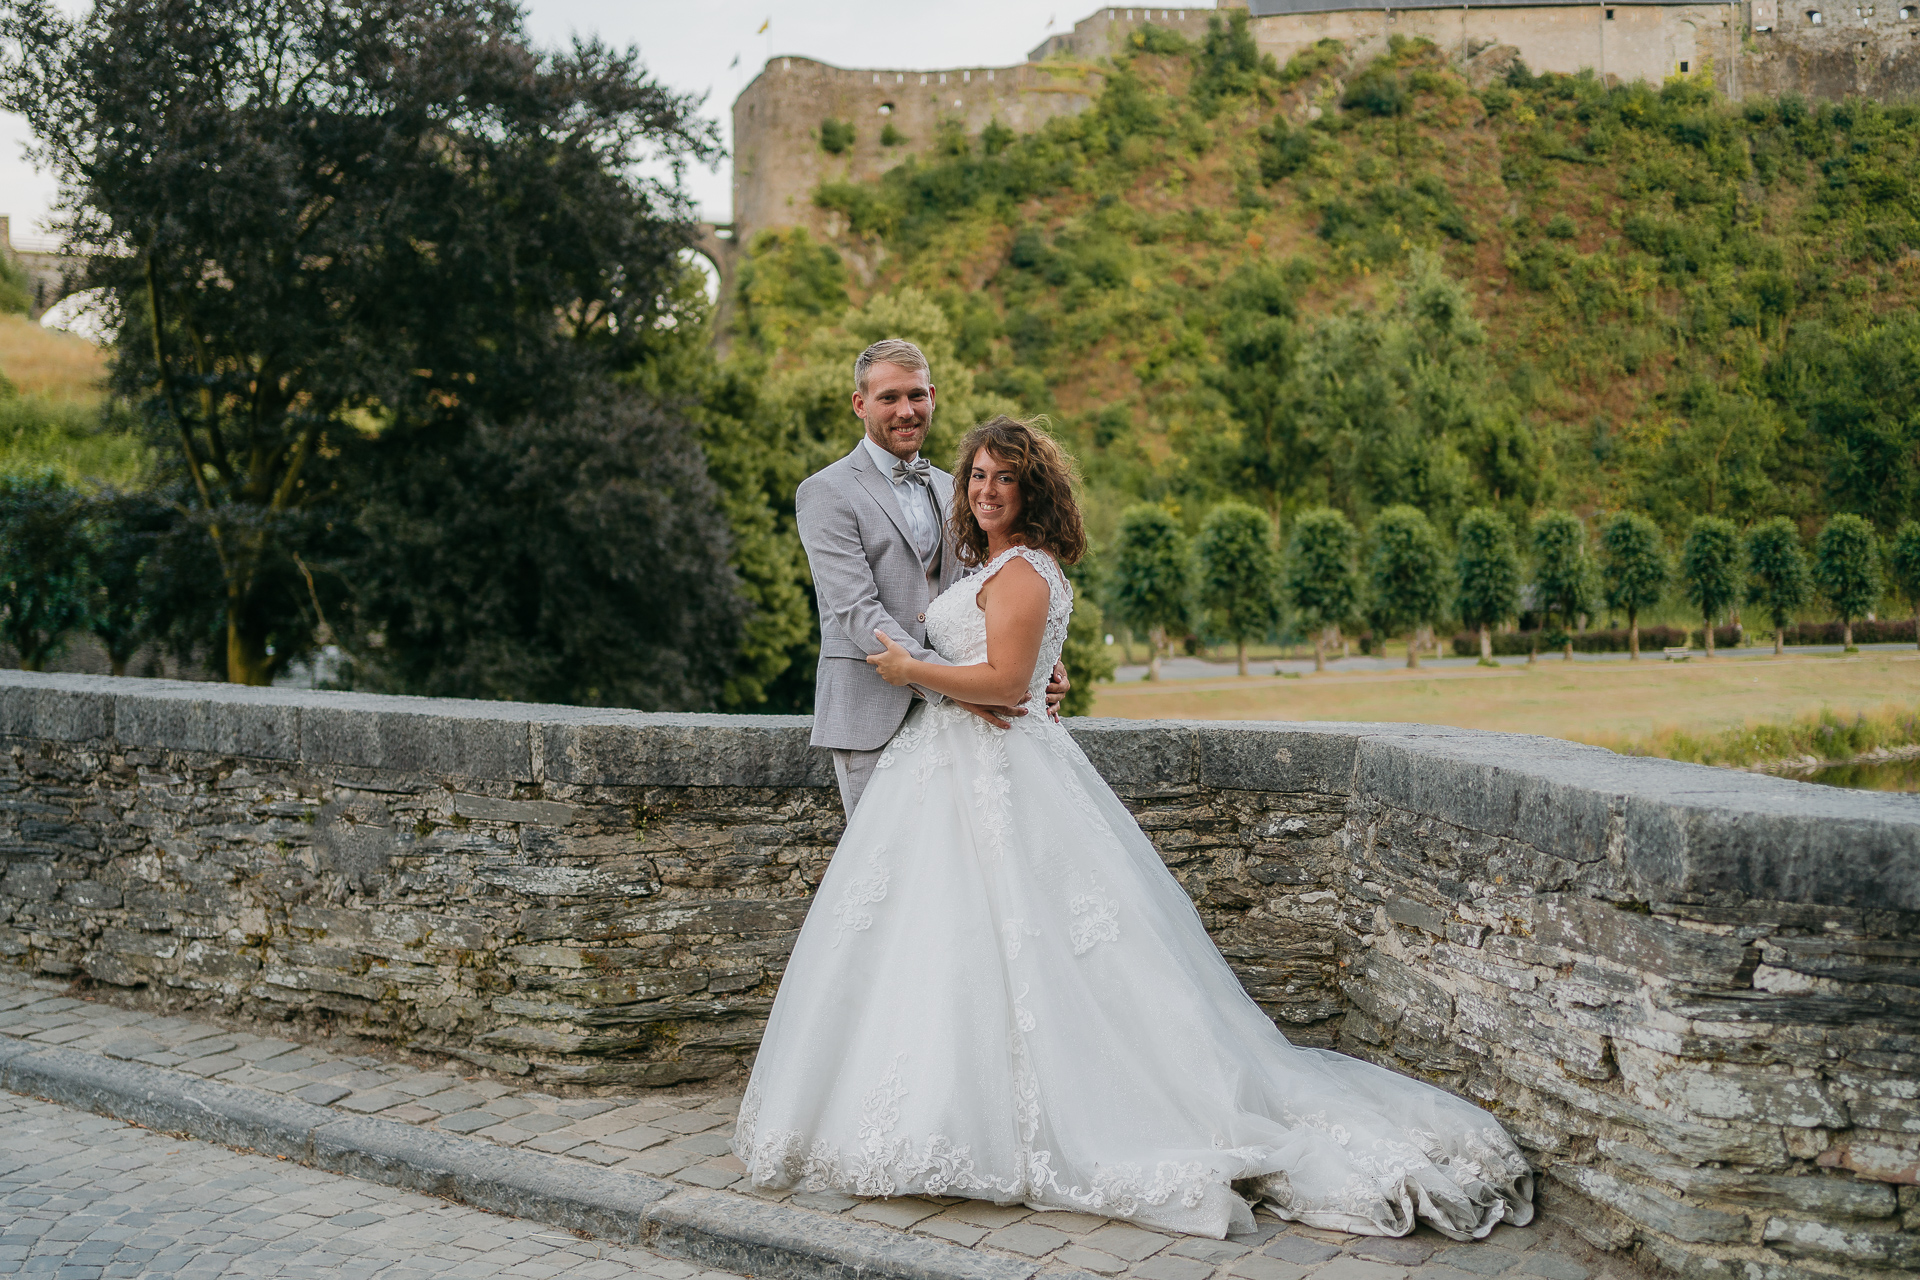 Un couple se faisant photographier sur un pont près d'un château par un photographe professionnel.